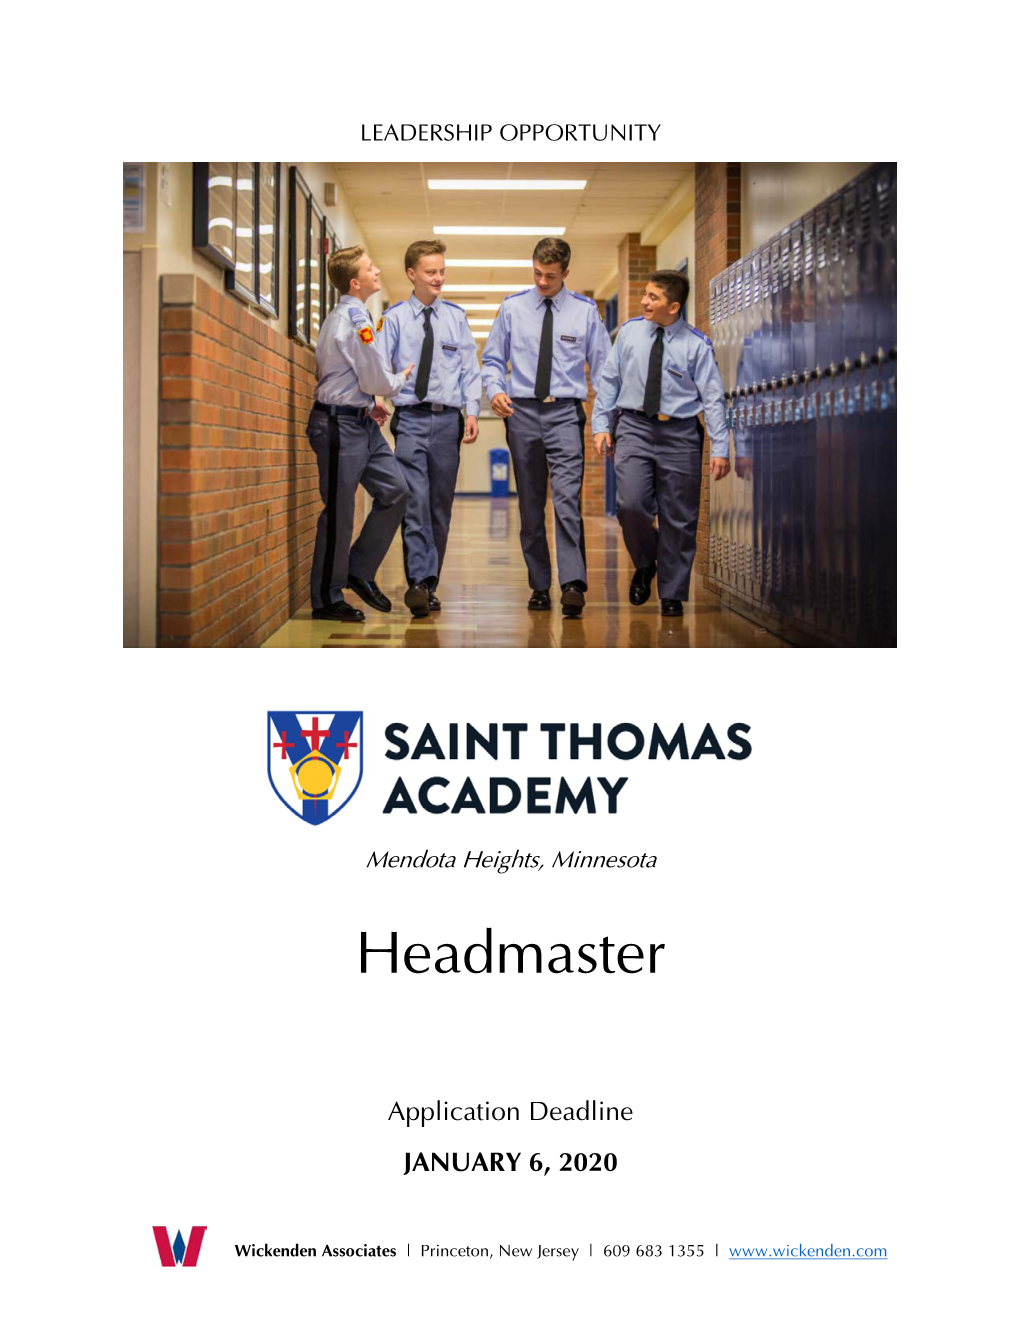 Saint Thomas Academy at a Glance